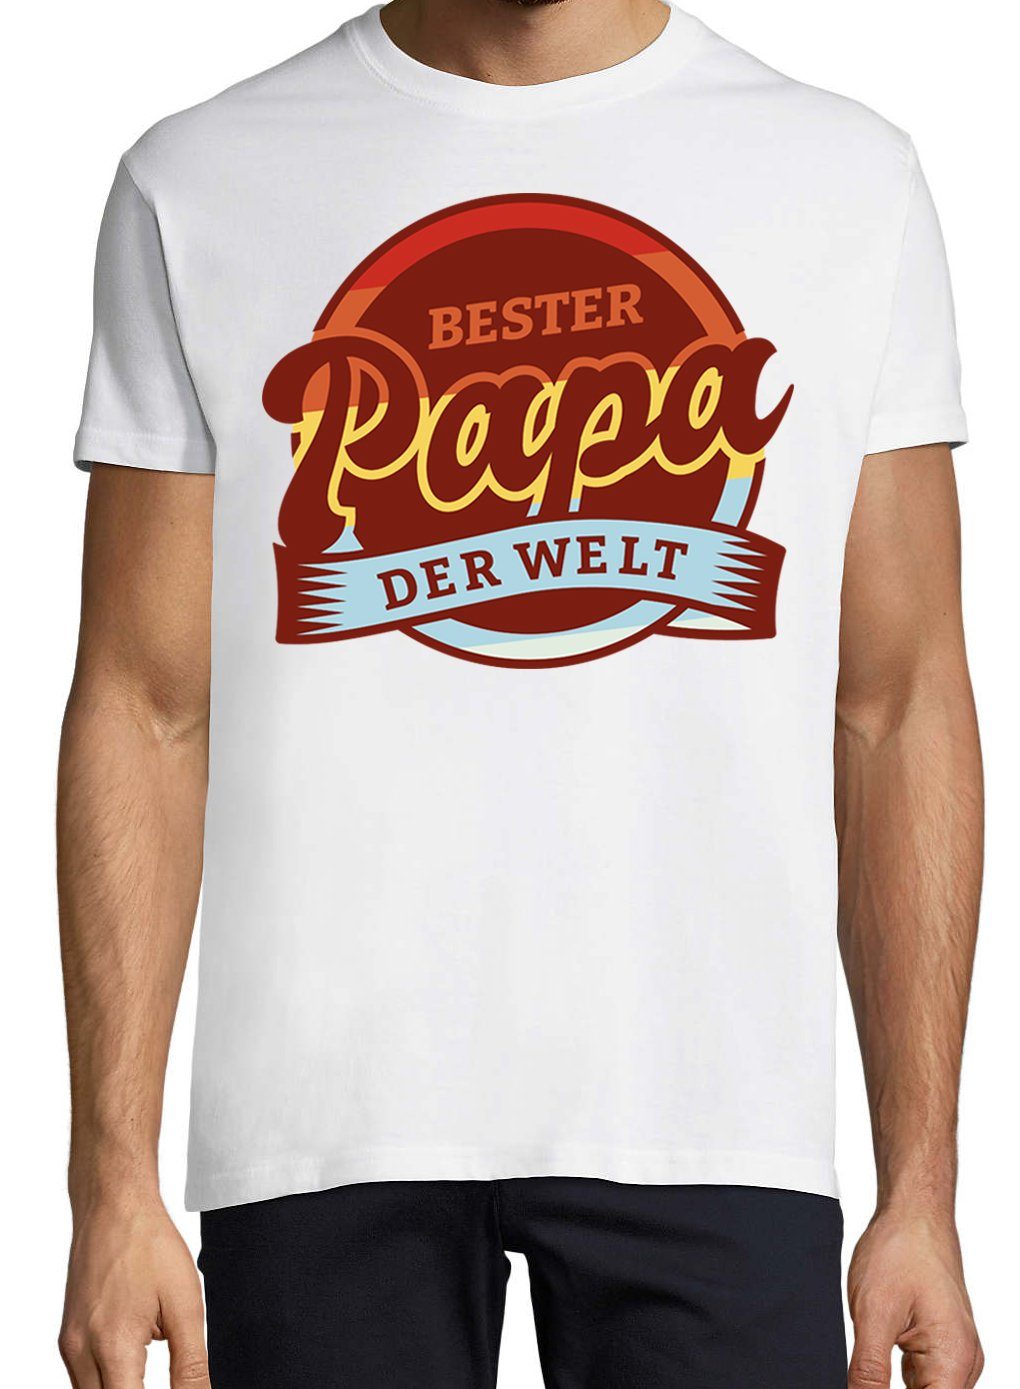 Frontdruck Designz Trendigem T-Shirt Bester Weiss Papa T-Shirt Herren Der Youth mit Welt